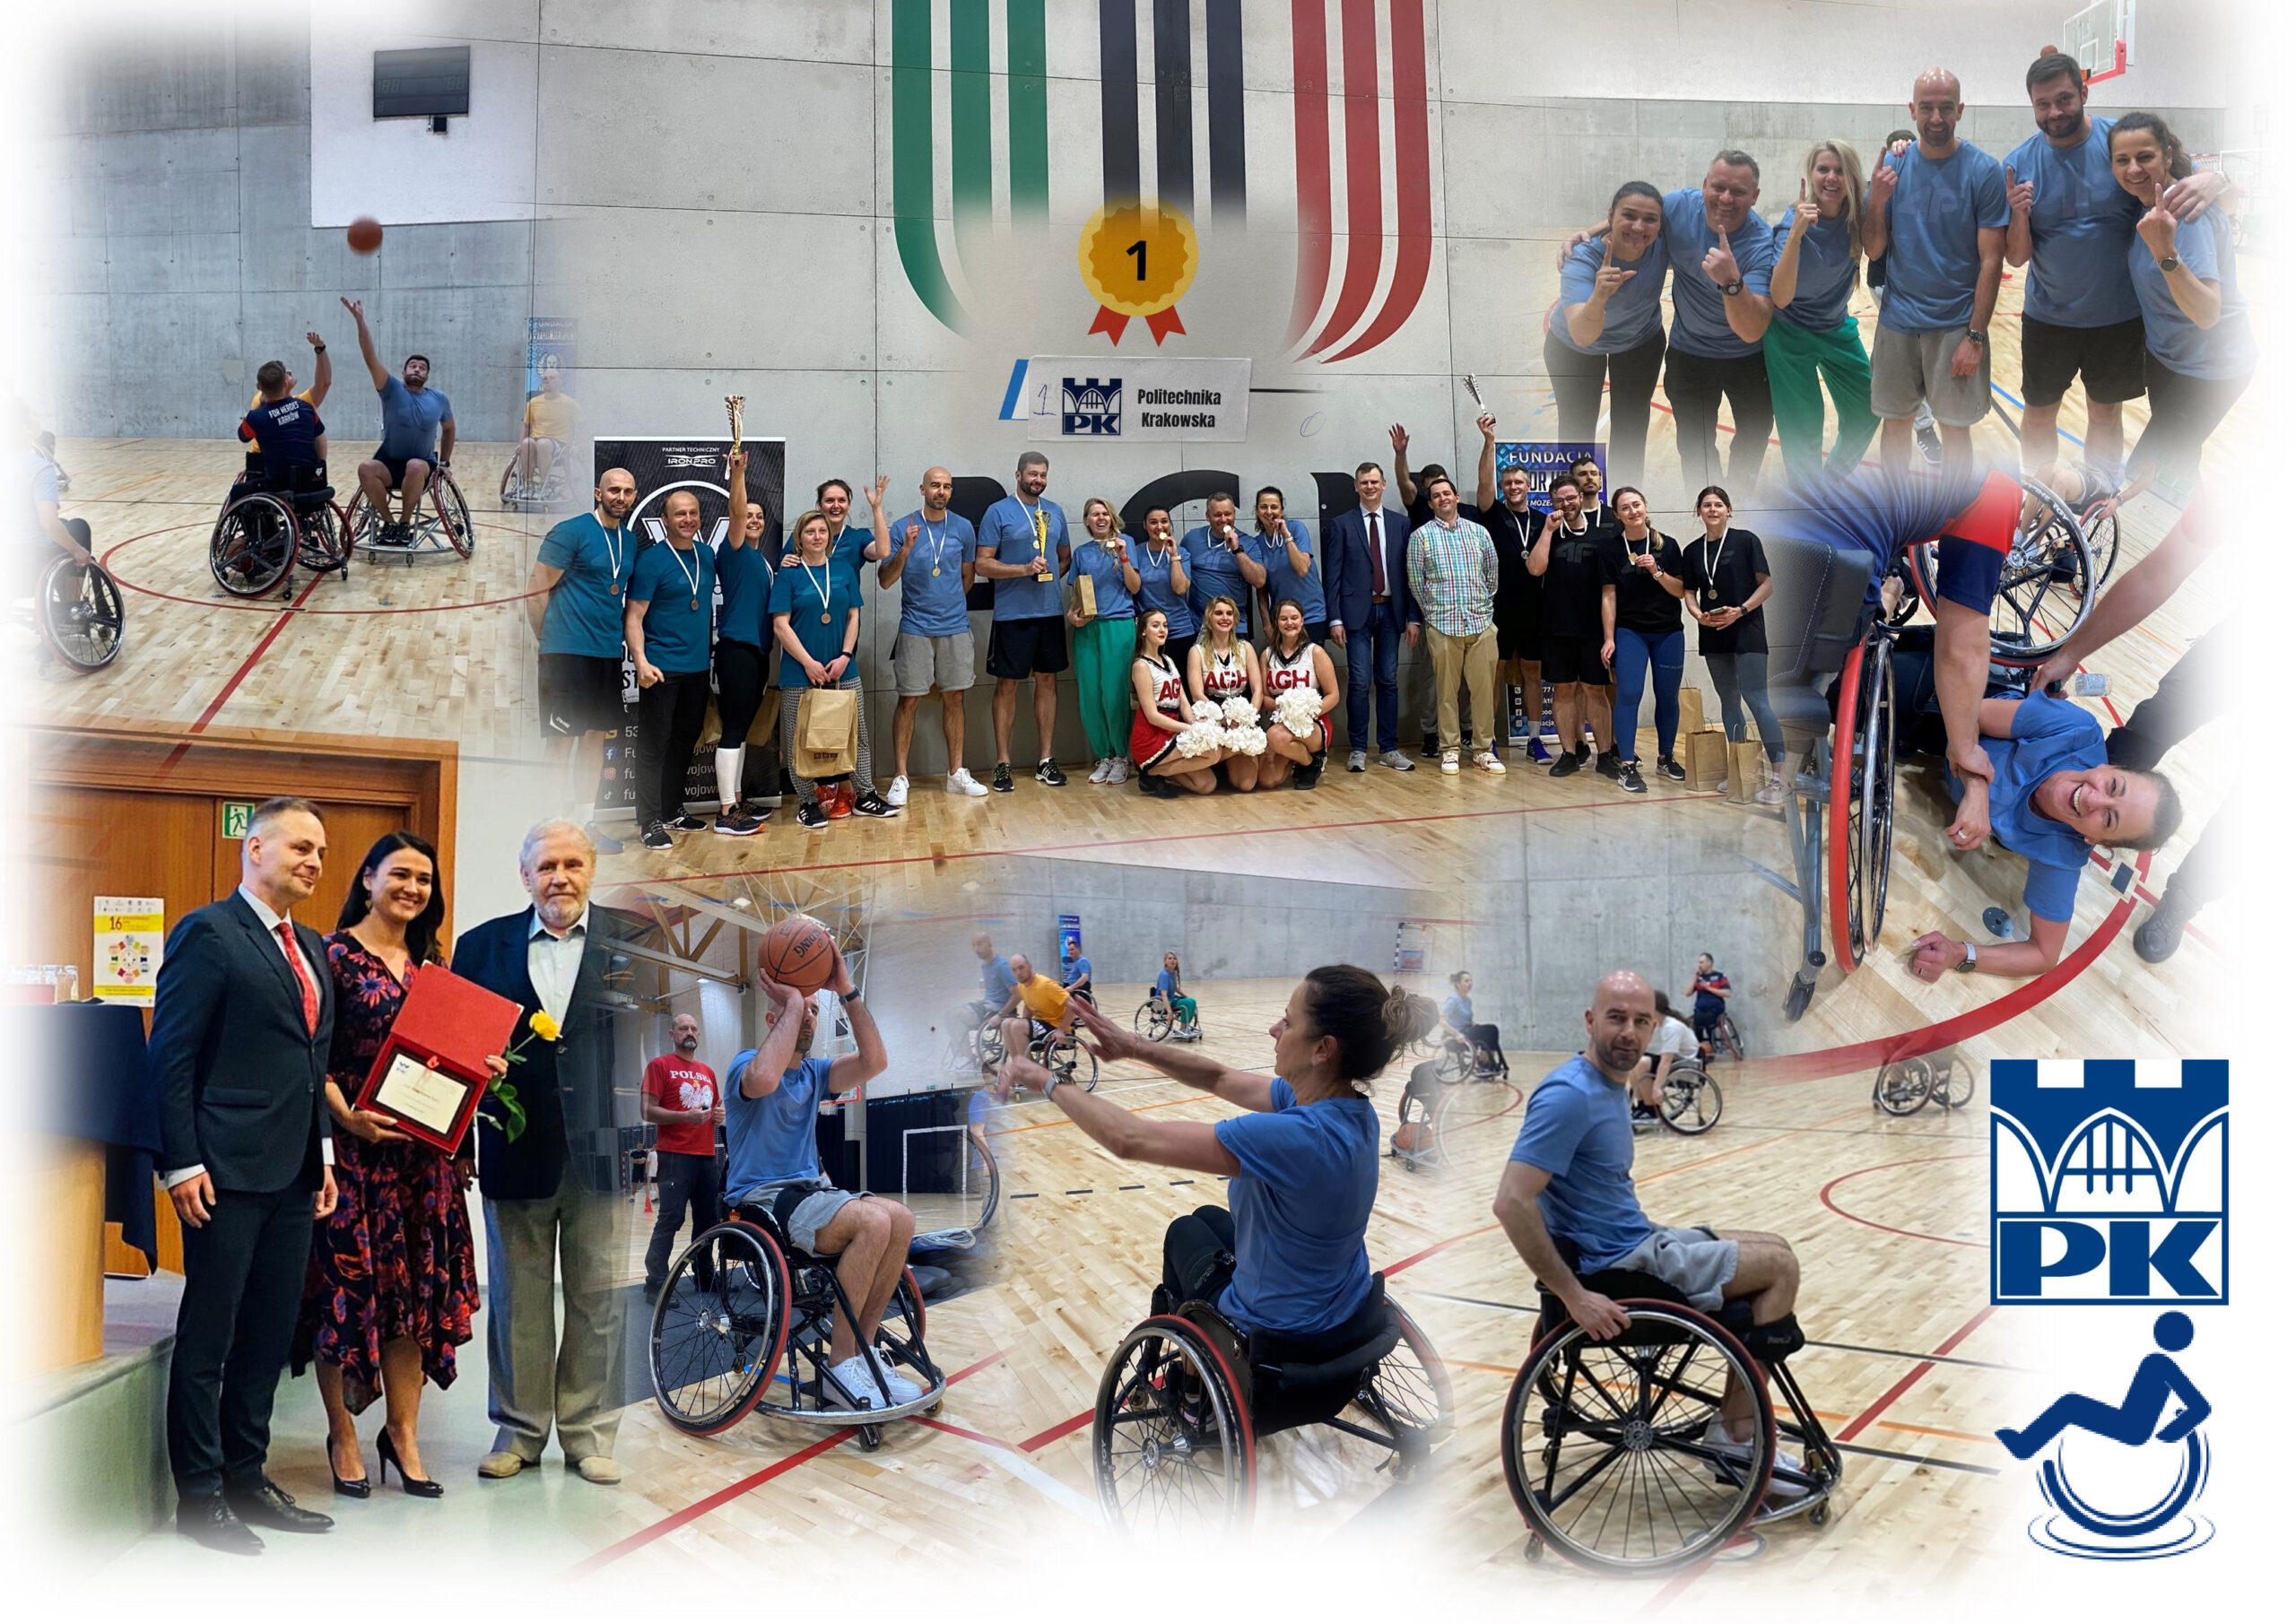 Wręczenie nagród Integralia i zwycięstwo w Turnieju koszykówki na wózkach